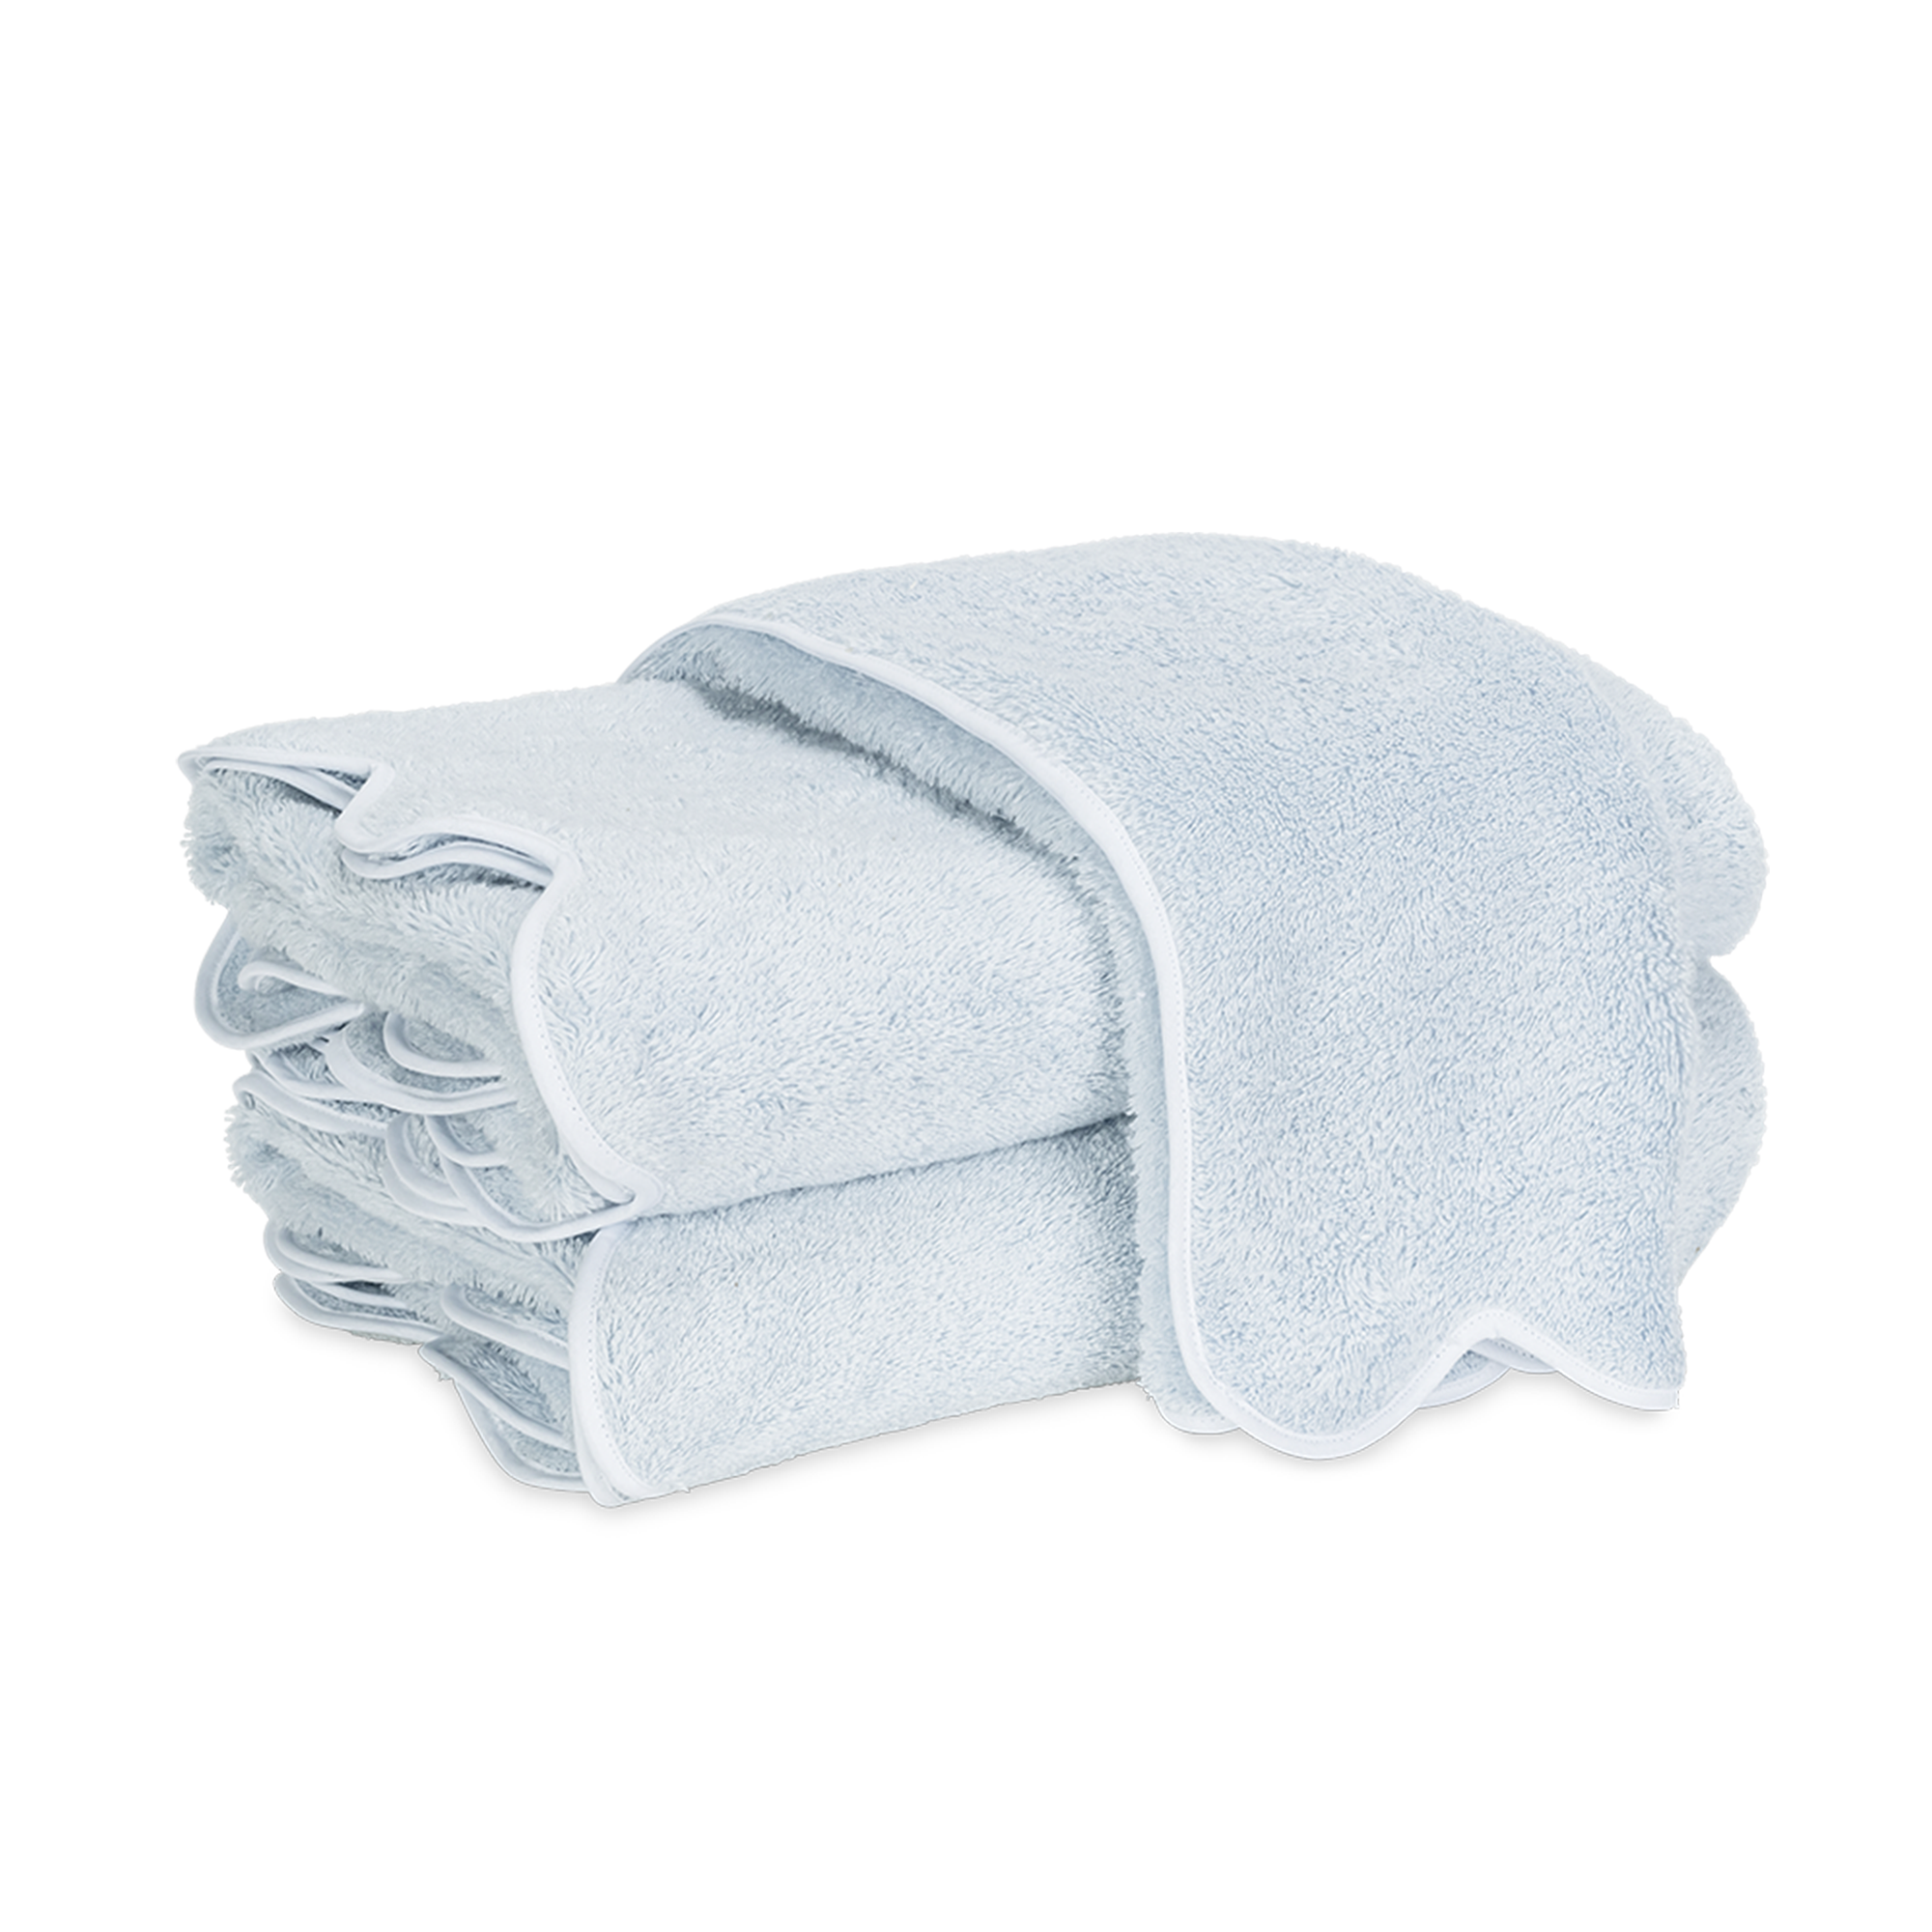 Silo Image of Matouk Cairo Scallop Bath Towels in Color Light Blue/White